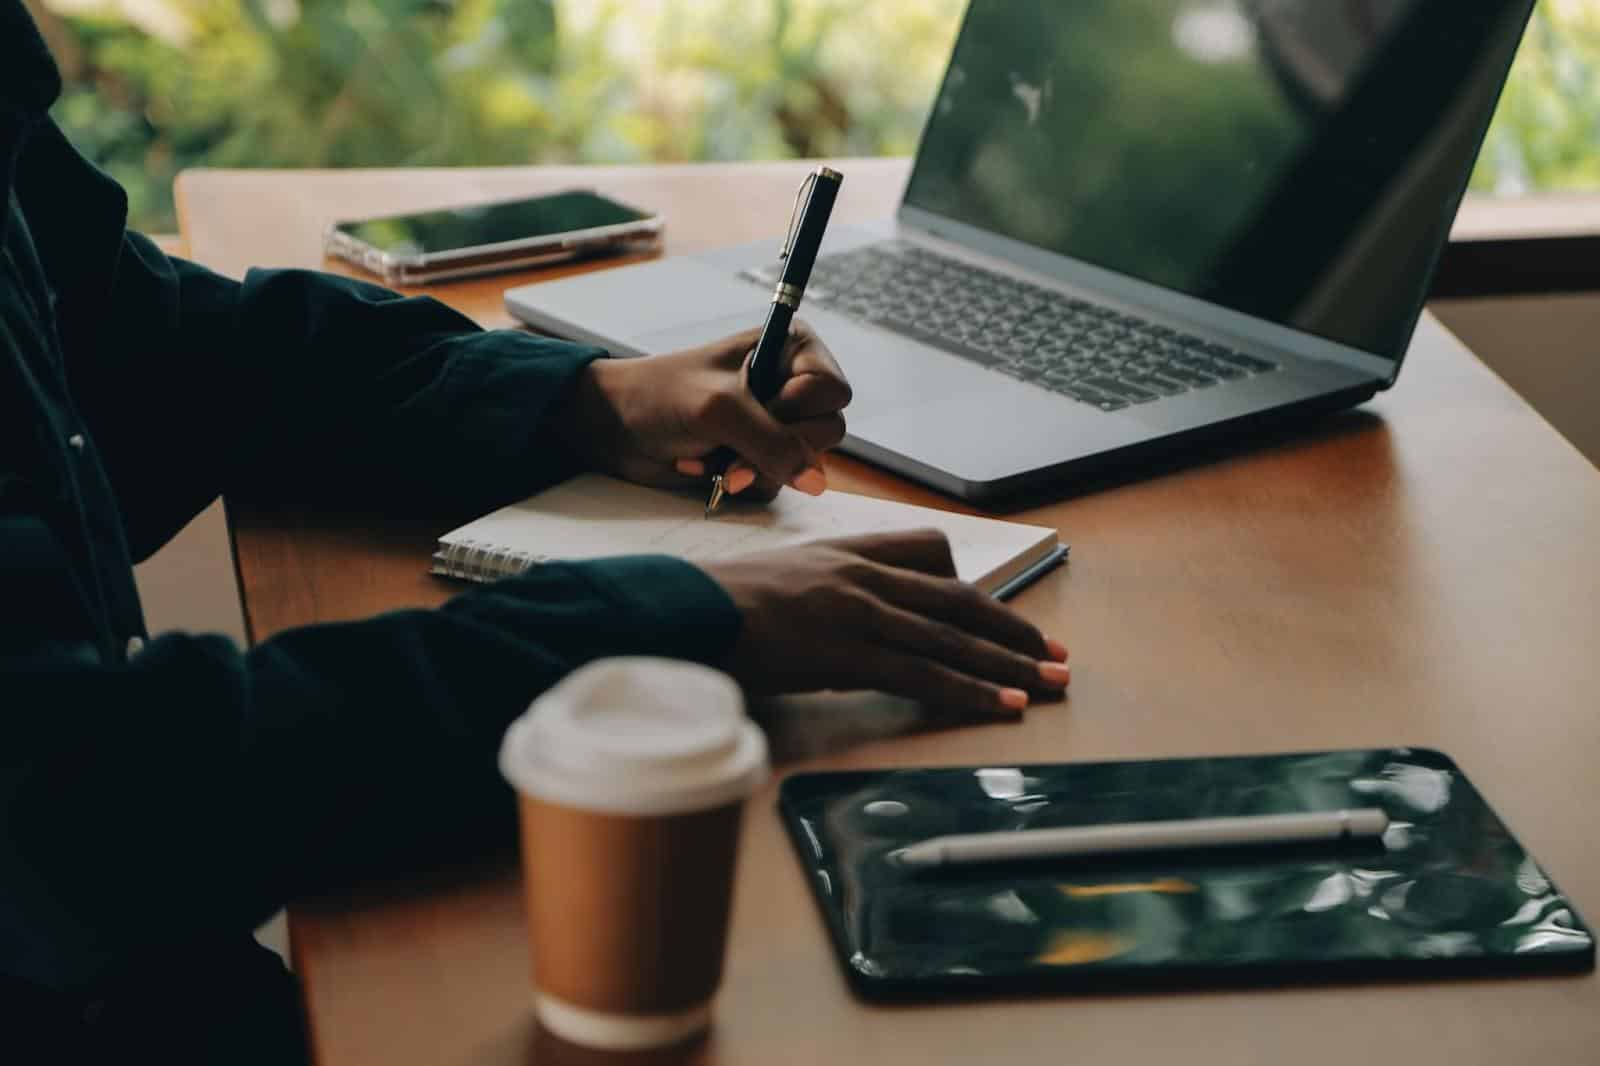 Pessoa escrevendo notas em um caderno ao lado de um laptop e uma xícara de café em uma mesa de madeira.